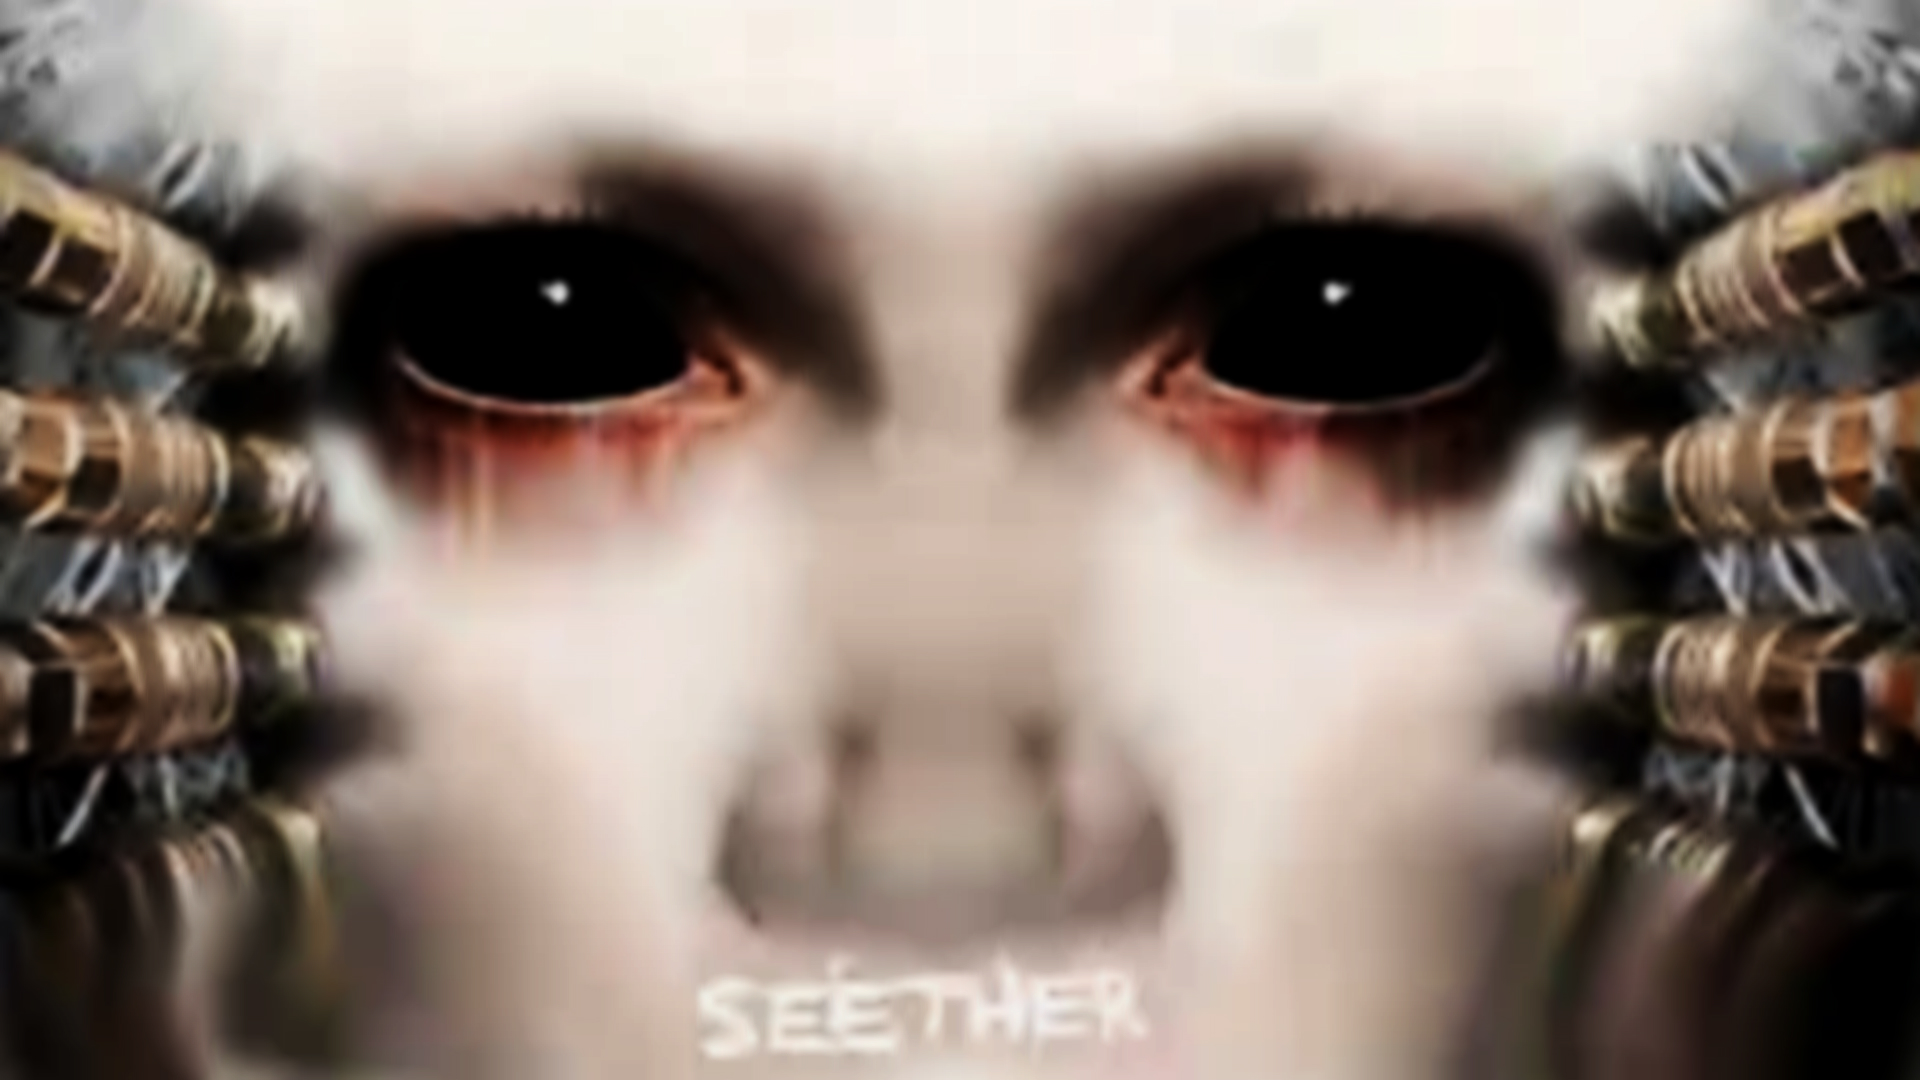 seether wallpaper,face,eyelash,eye,nose,eyebrow